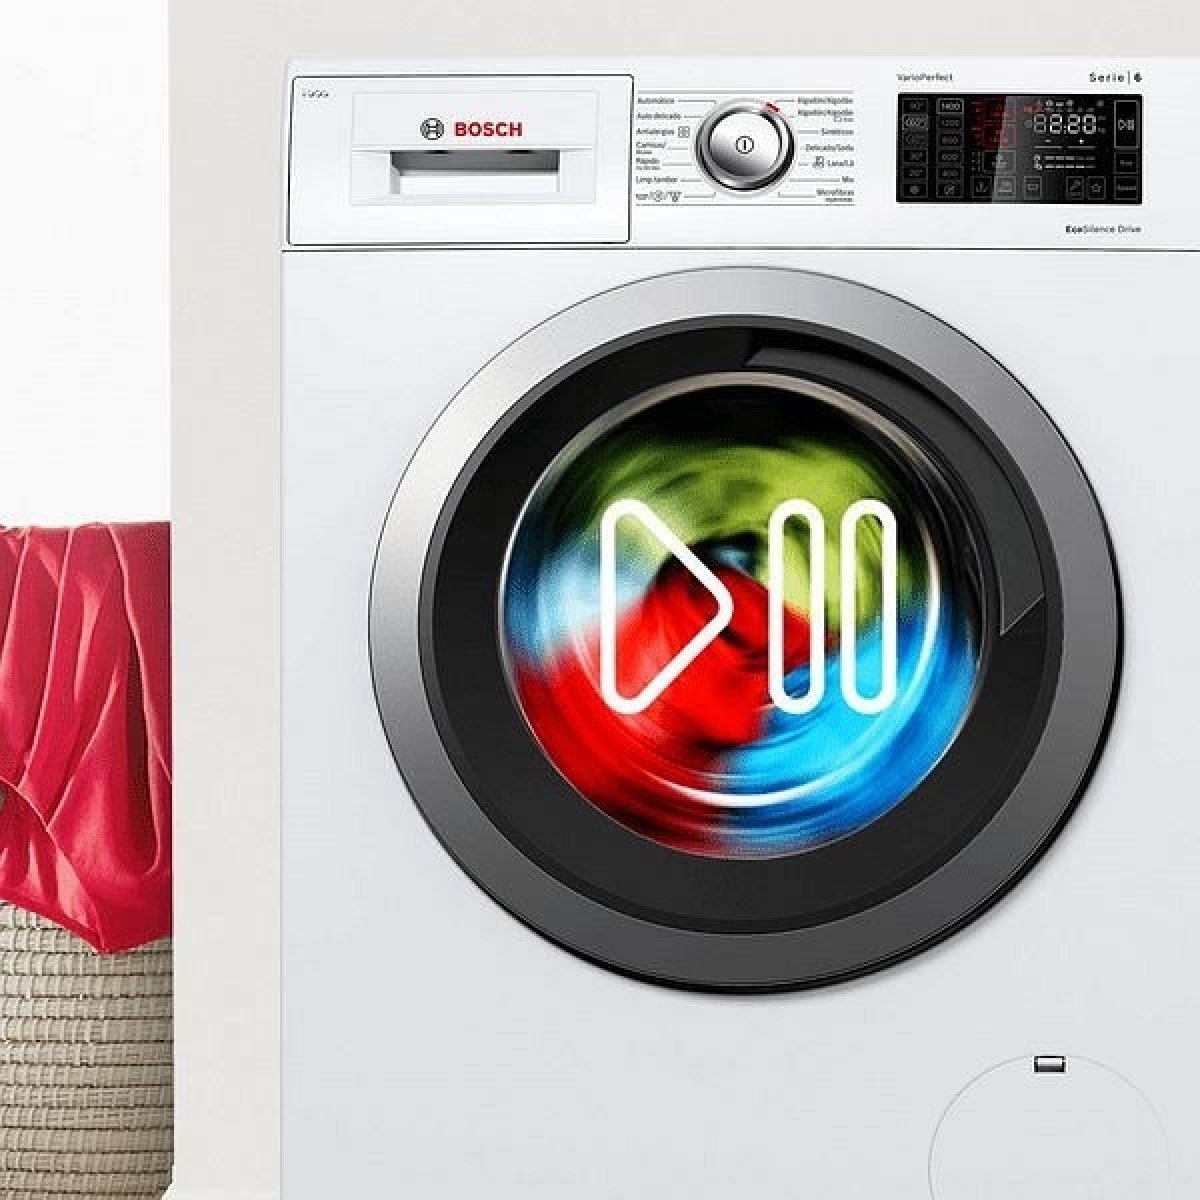 Přidat prádlo během praní? Žádný problém